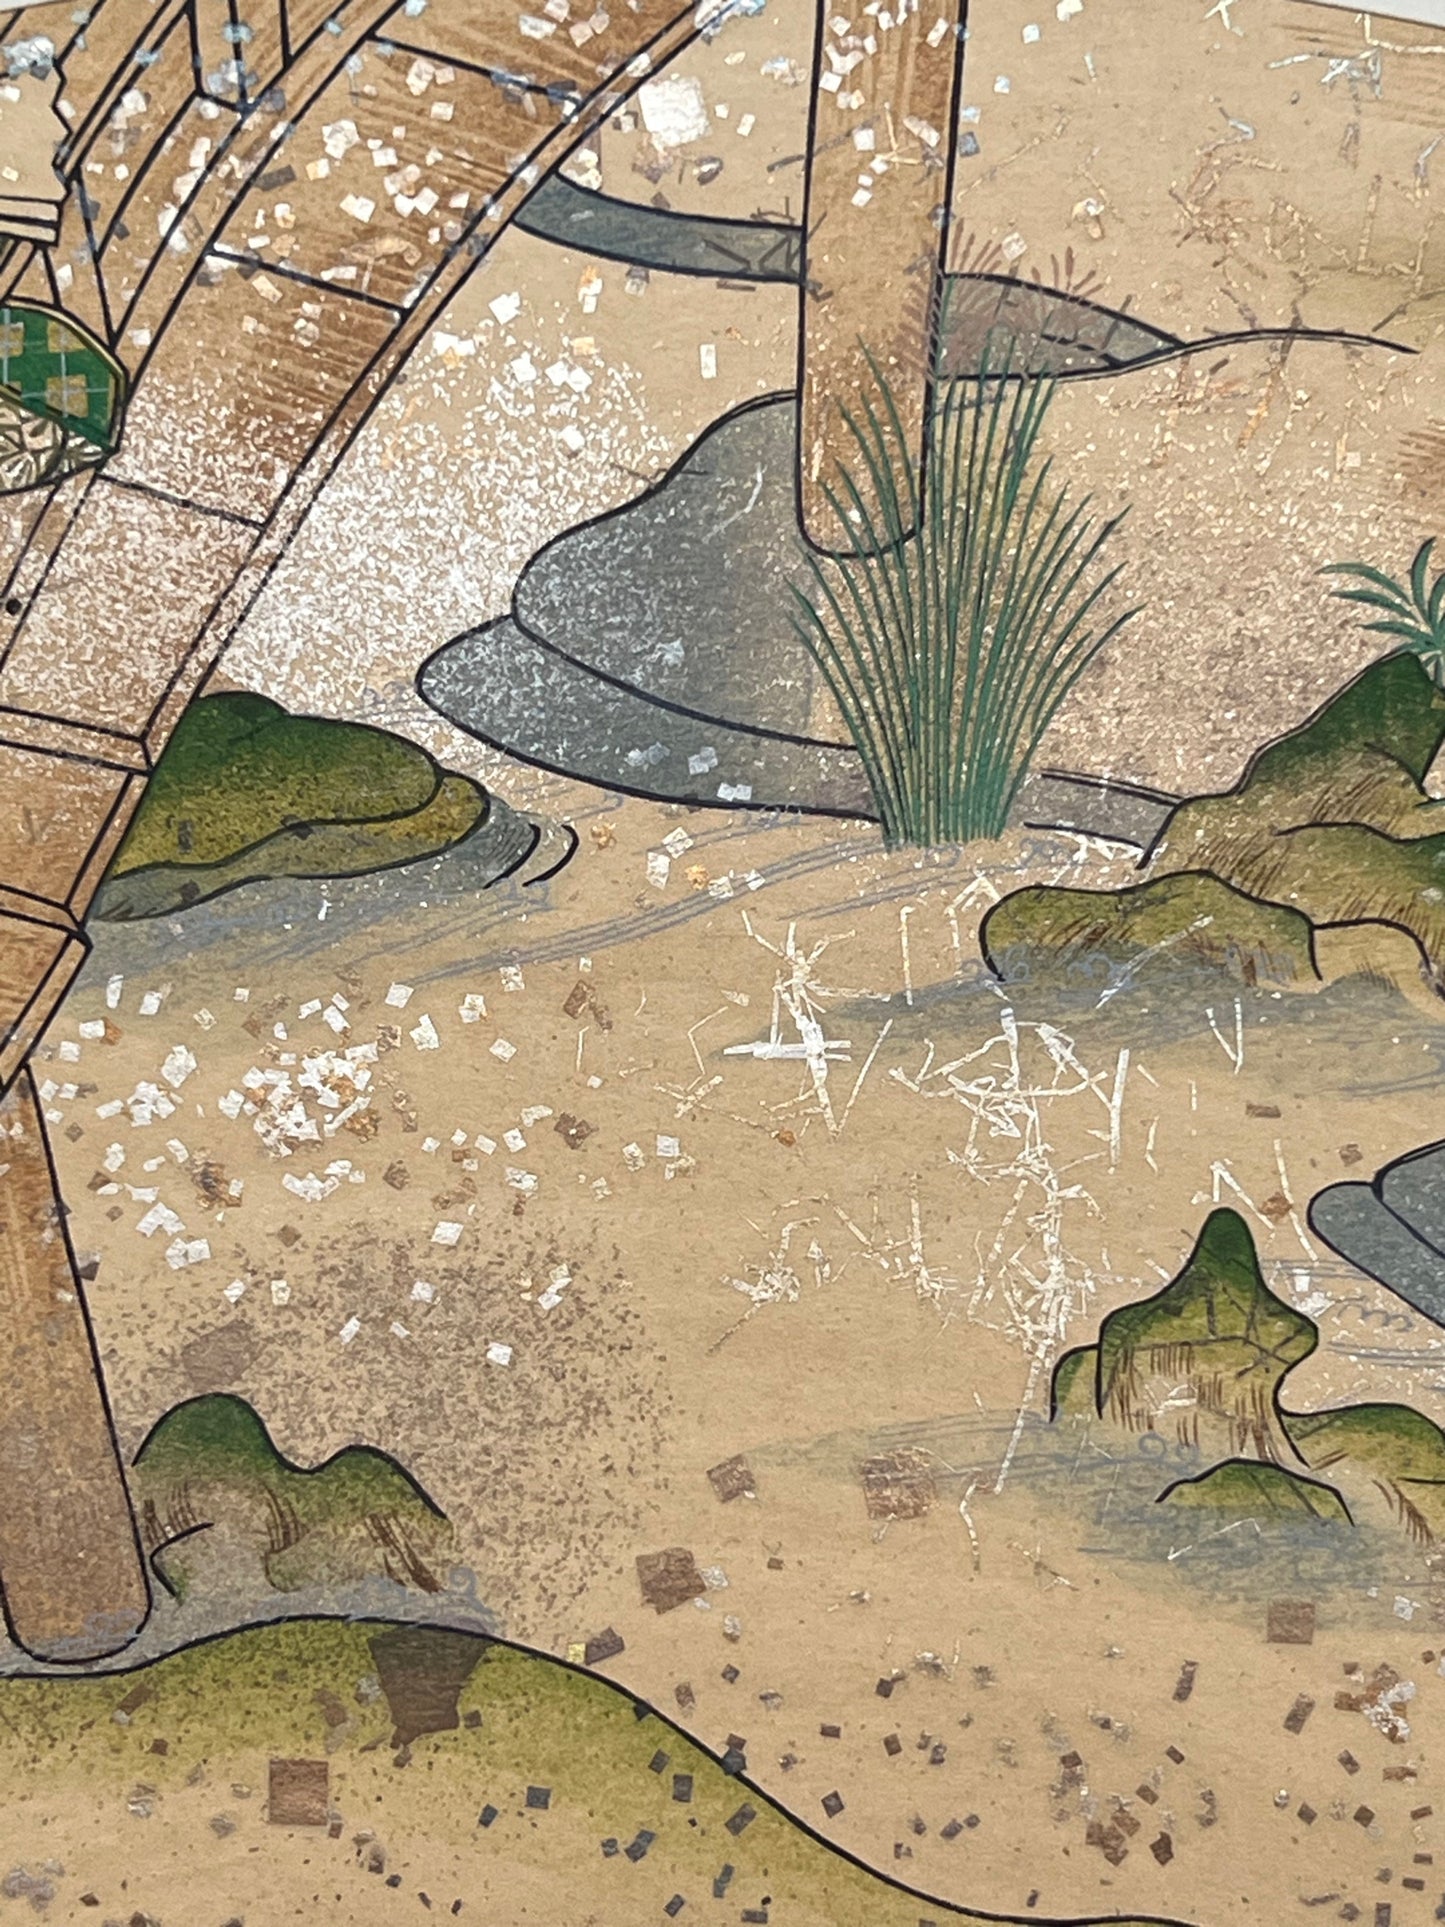 Estampe japonaise en forme d'éventail parsemée de fragments d'or et d'argent, gros plan sur l'eau de la rivière sous la terrasse, herbes et rochers, fragments scintillants.